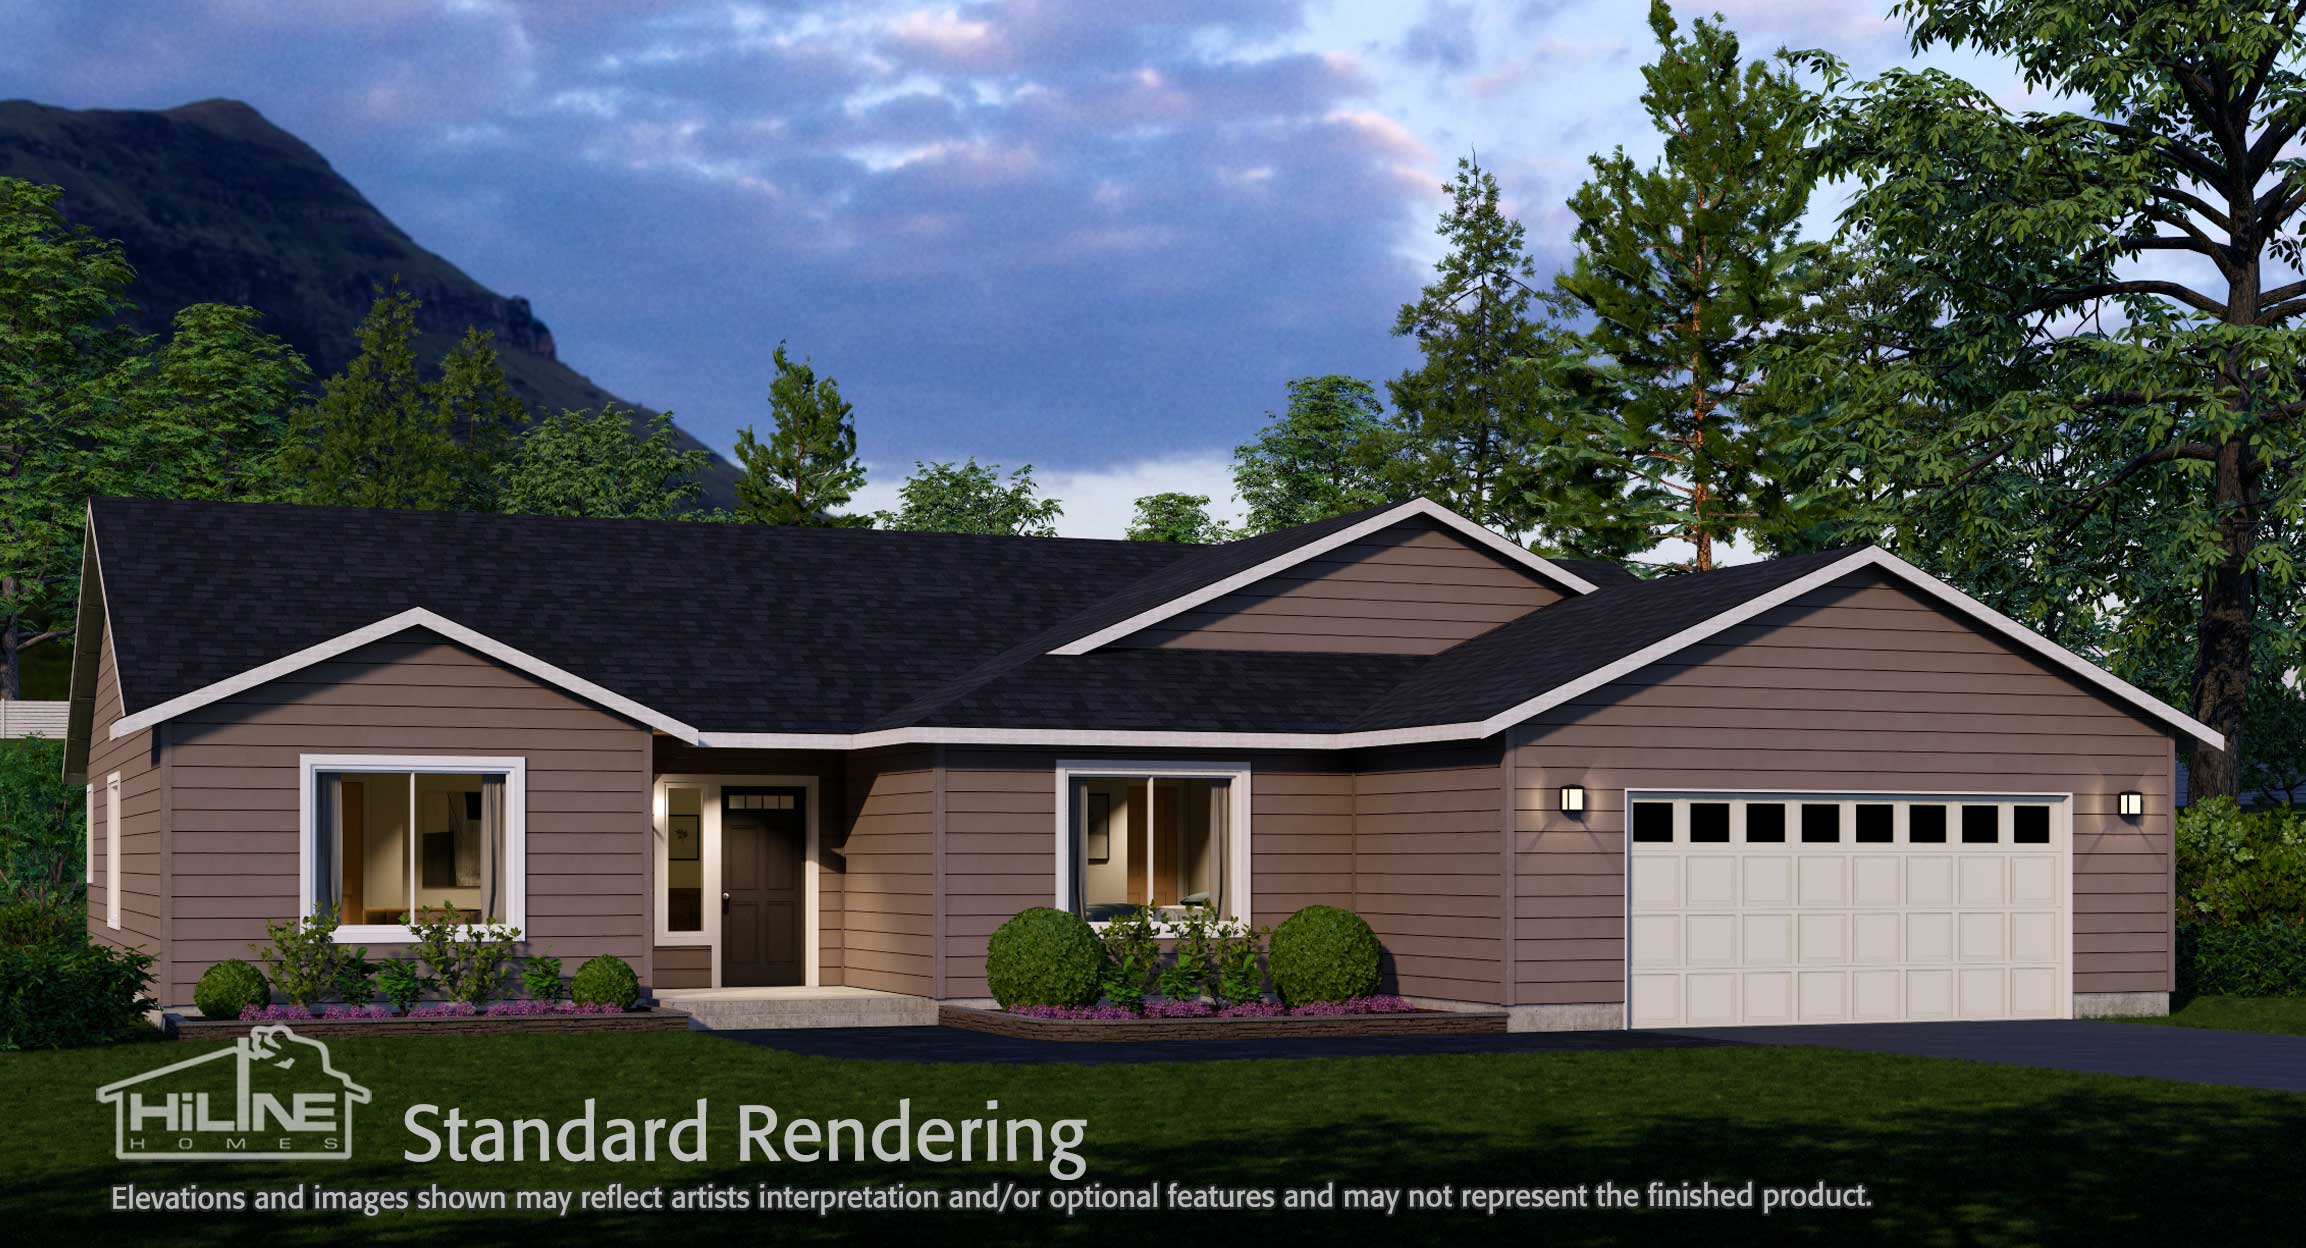 Image of Home Plan 2270 Standard Rendering.